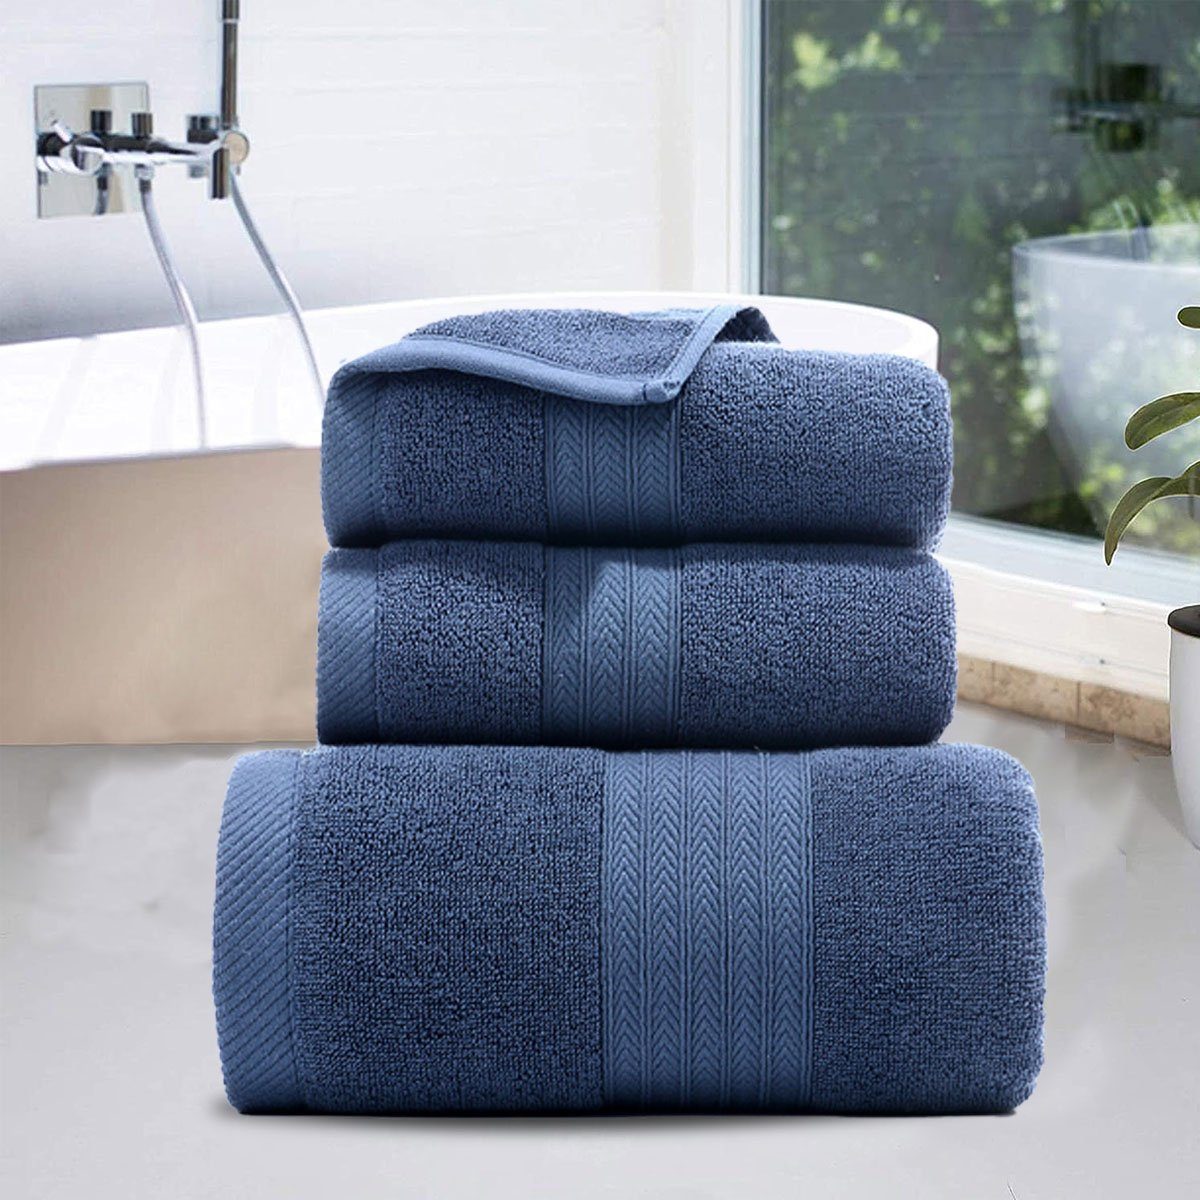 Jormftte Handtuch Set Handtücher Set-2xHandtuch,1xBadetuch,saugfähig und weich,für Blau Hause zu